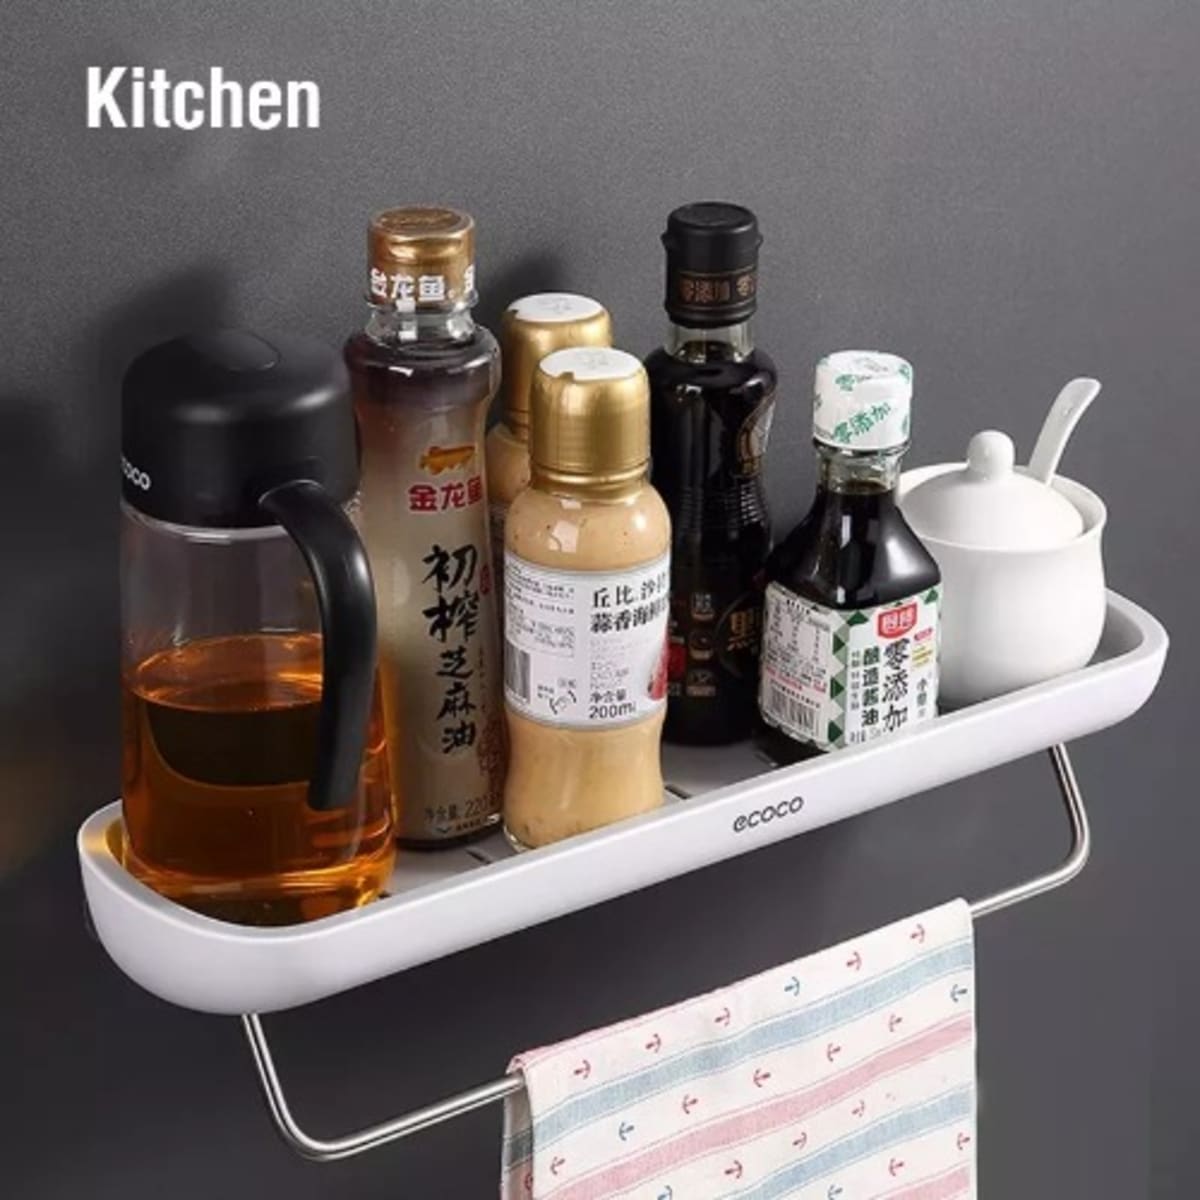 ECOCO Spice Rack Kitchen Shelf Organizer Storage Condiment Bottle